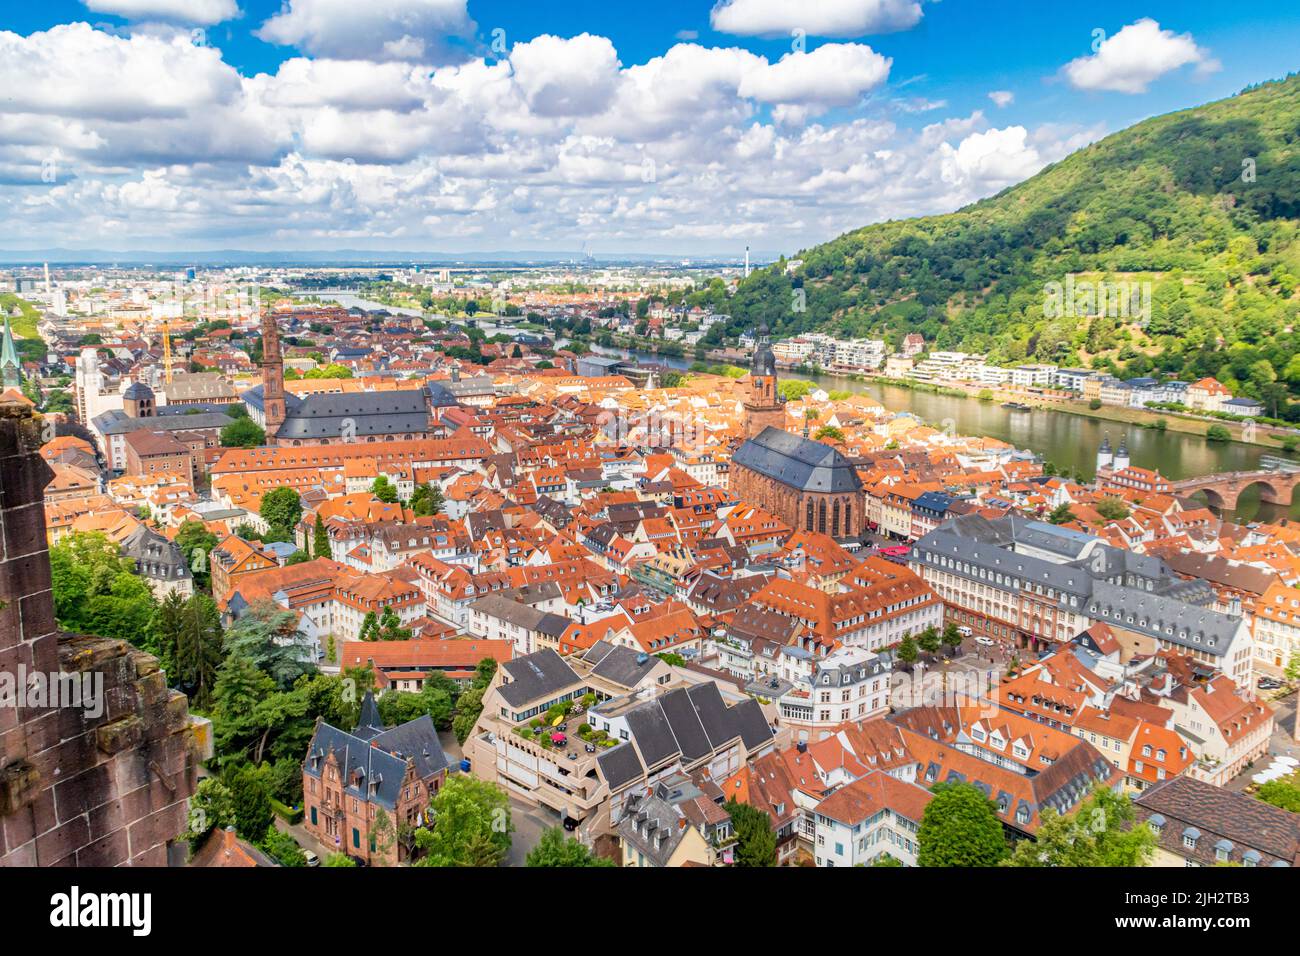 Belle vue sur la vieille ville de Heidelberg en été. Heidelberg sur le Neckar en Allemagne est connu pour son université et son style romantique Banque D'Images